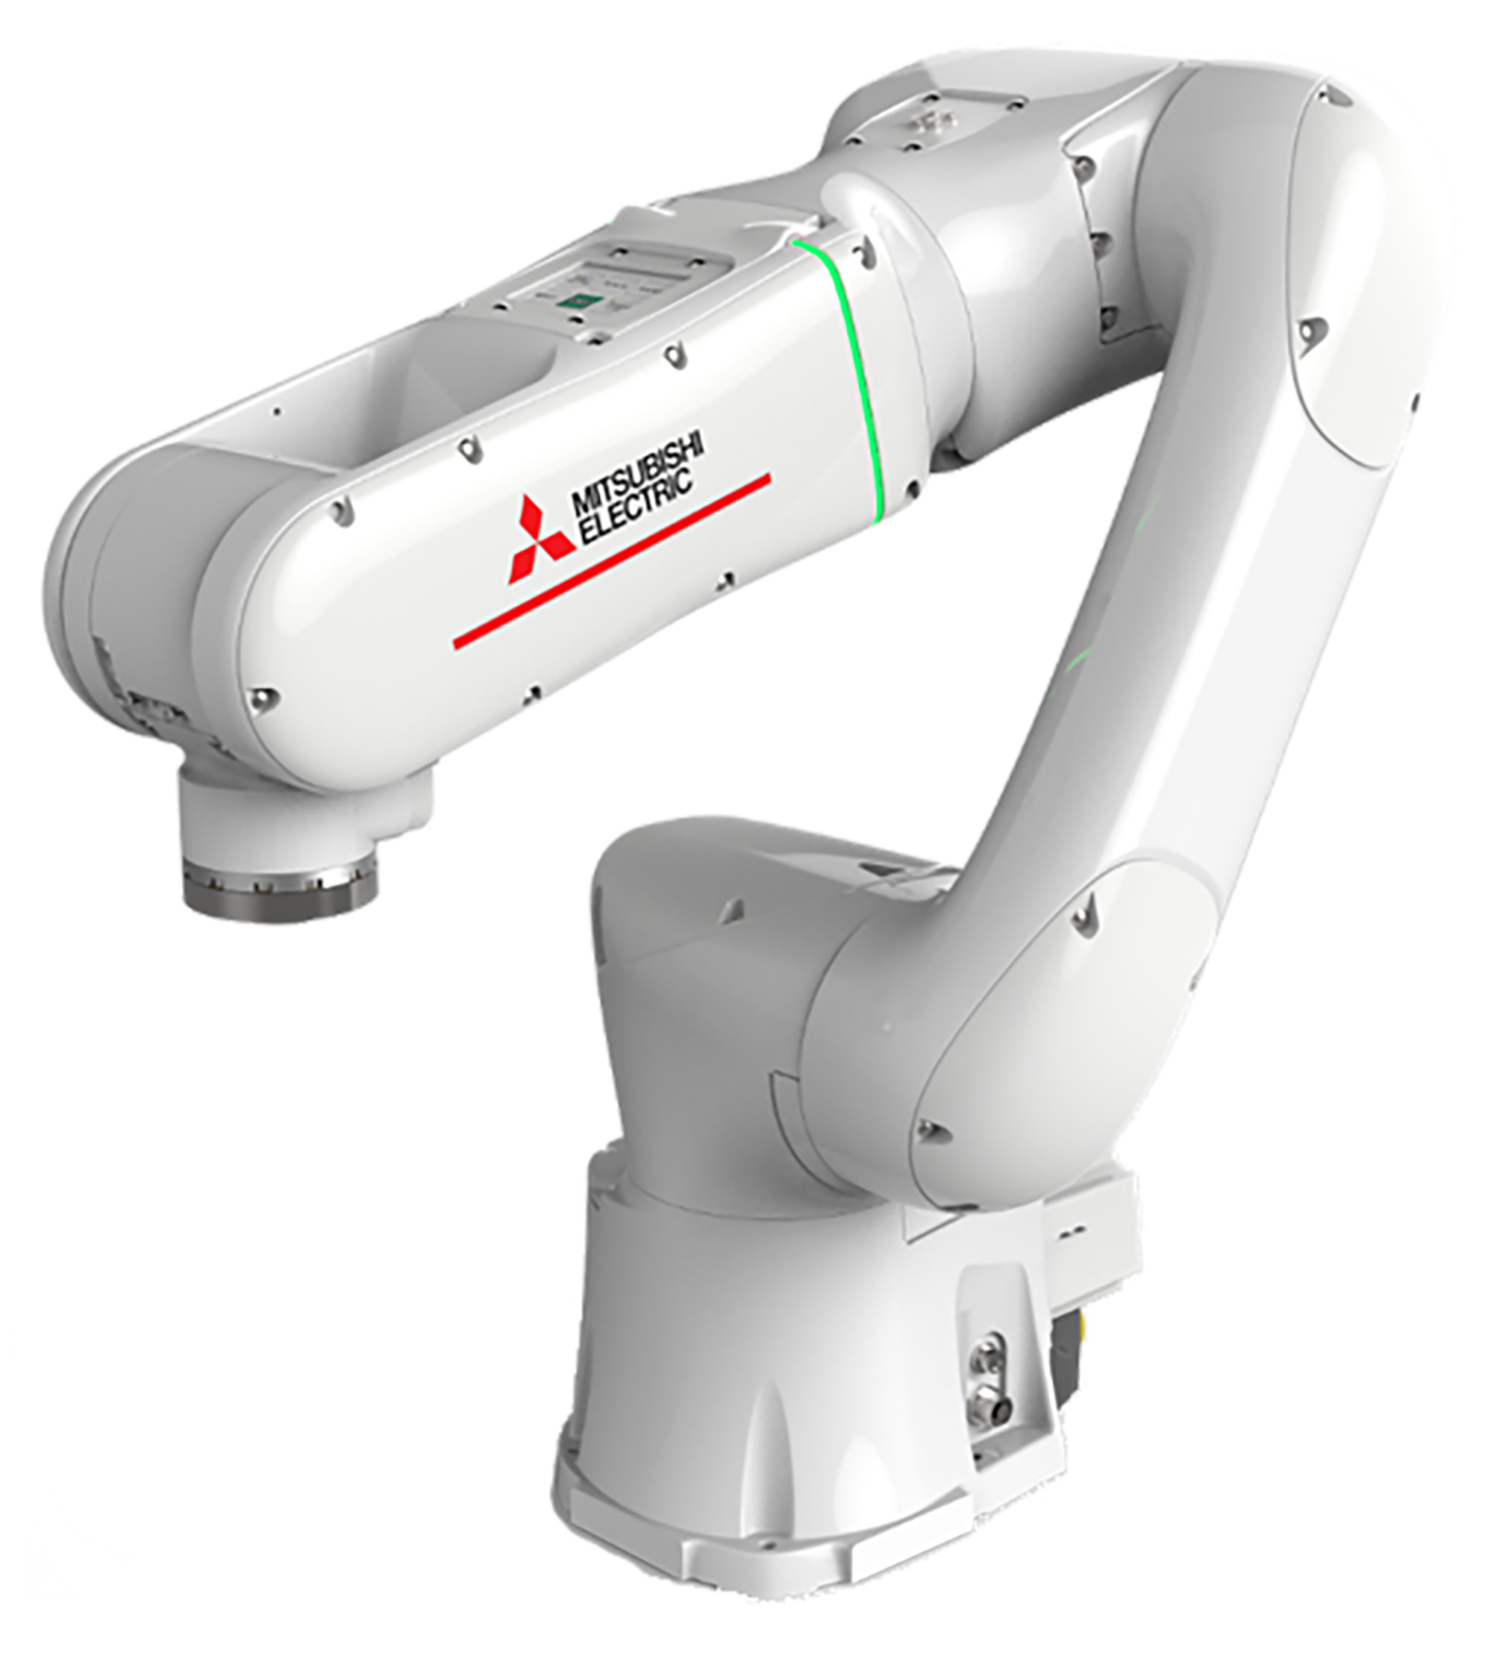 Der MELFA Assista von Mitsubishi Electric unterstützt Anwendungen in der Metallbearbeitung, bei denen sich Bediener und Roboter barrierefrei einen Arbeitsraum teilen. [Quelle: Mitsubishi Electric Europe B.V.]